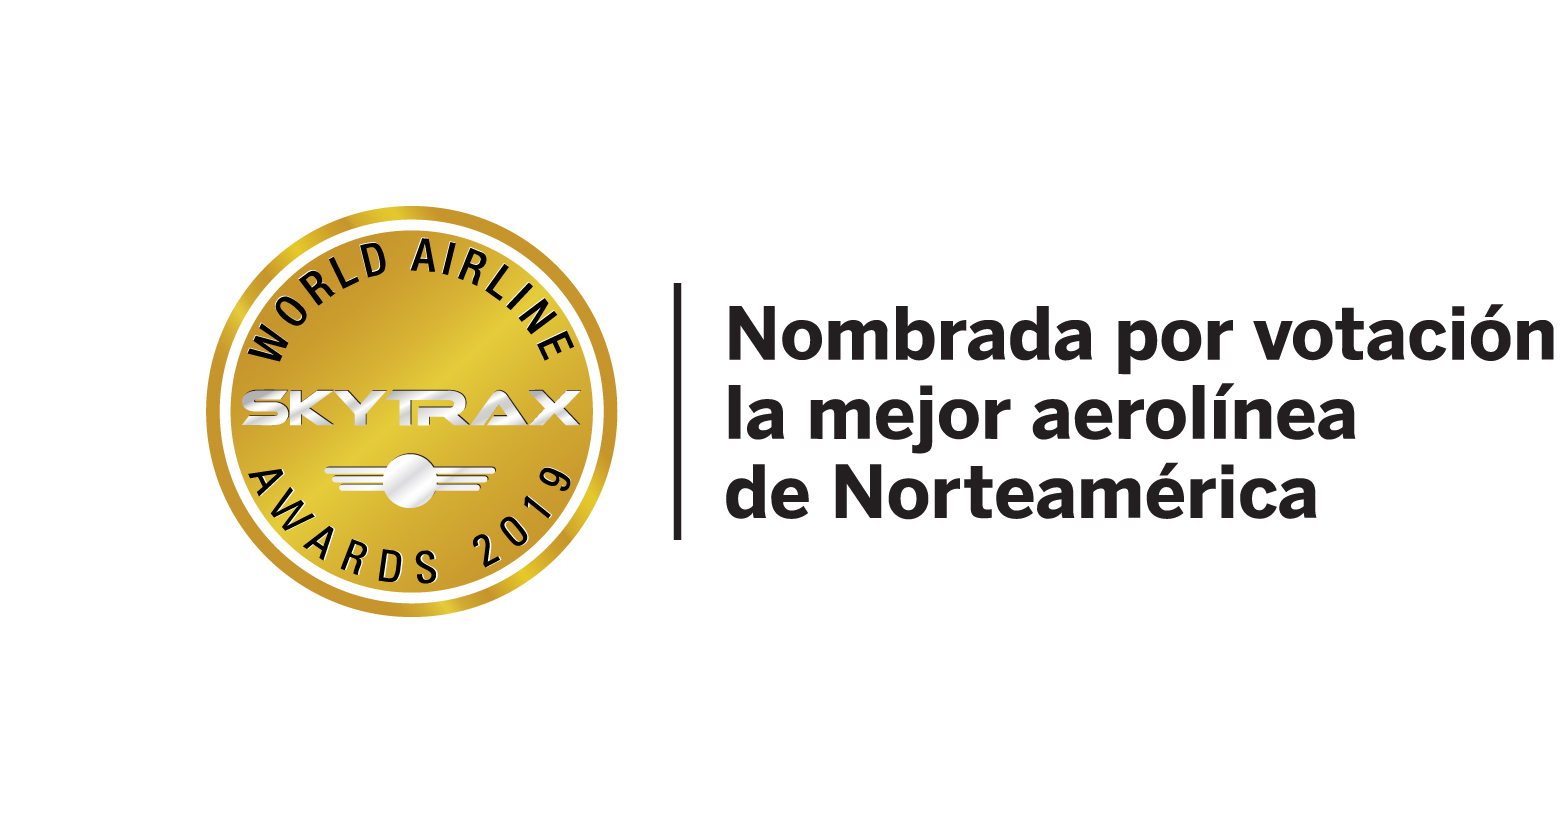  Skytrax Logo